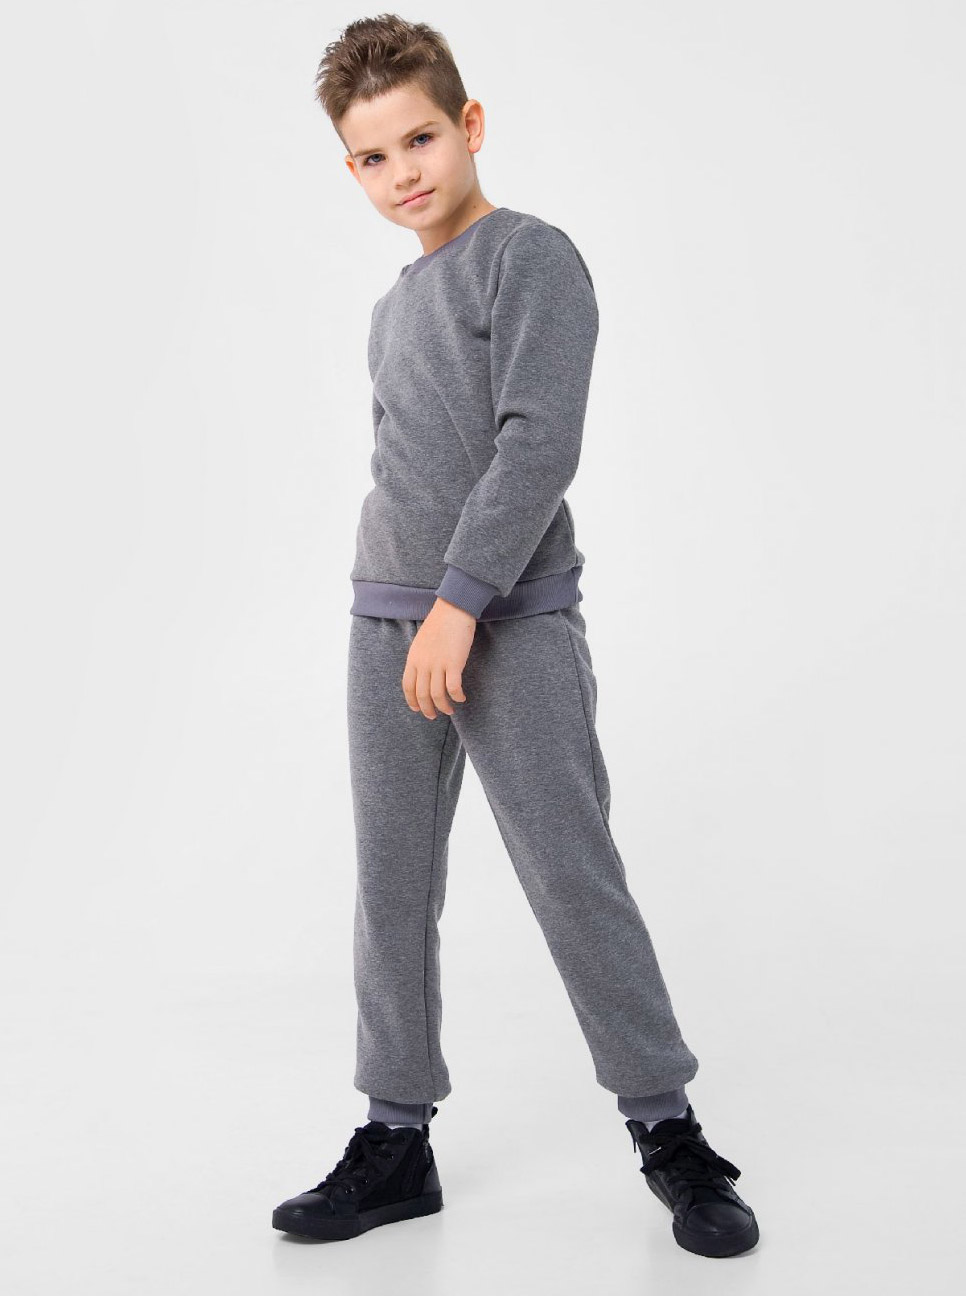 Утеплені штани для хлопчика Smil сірі 115446/115447 - ціна